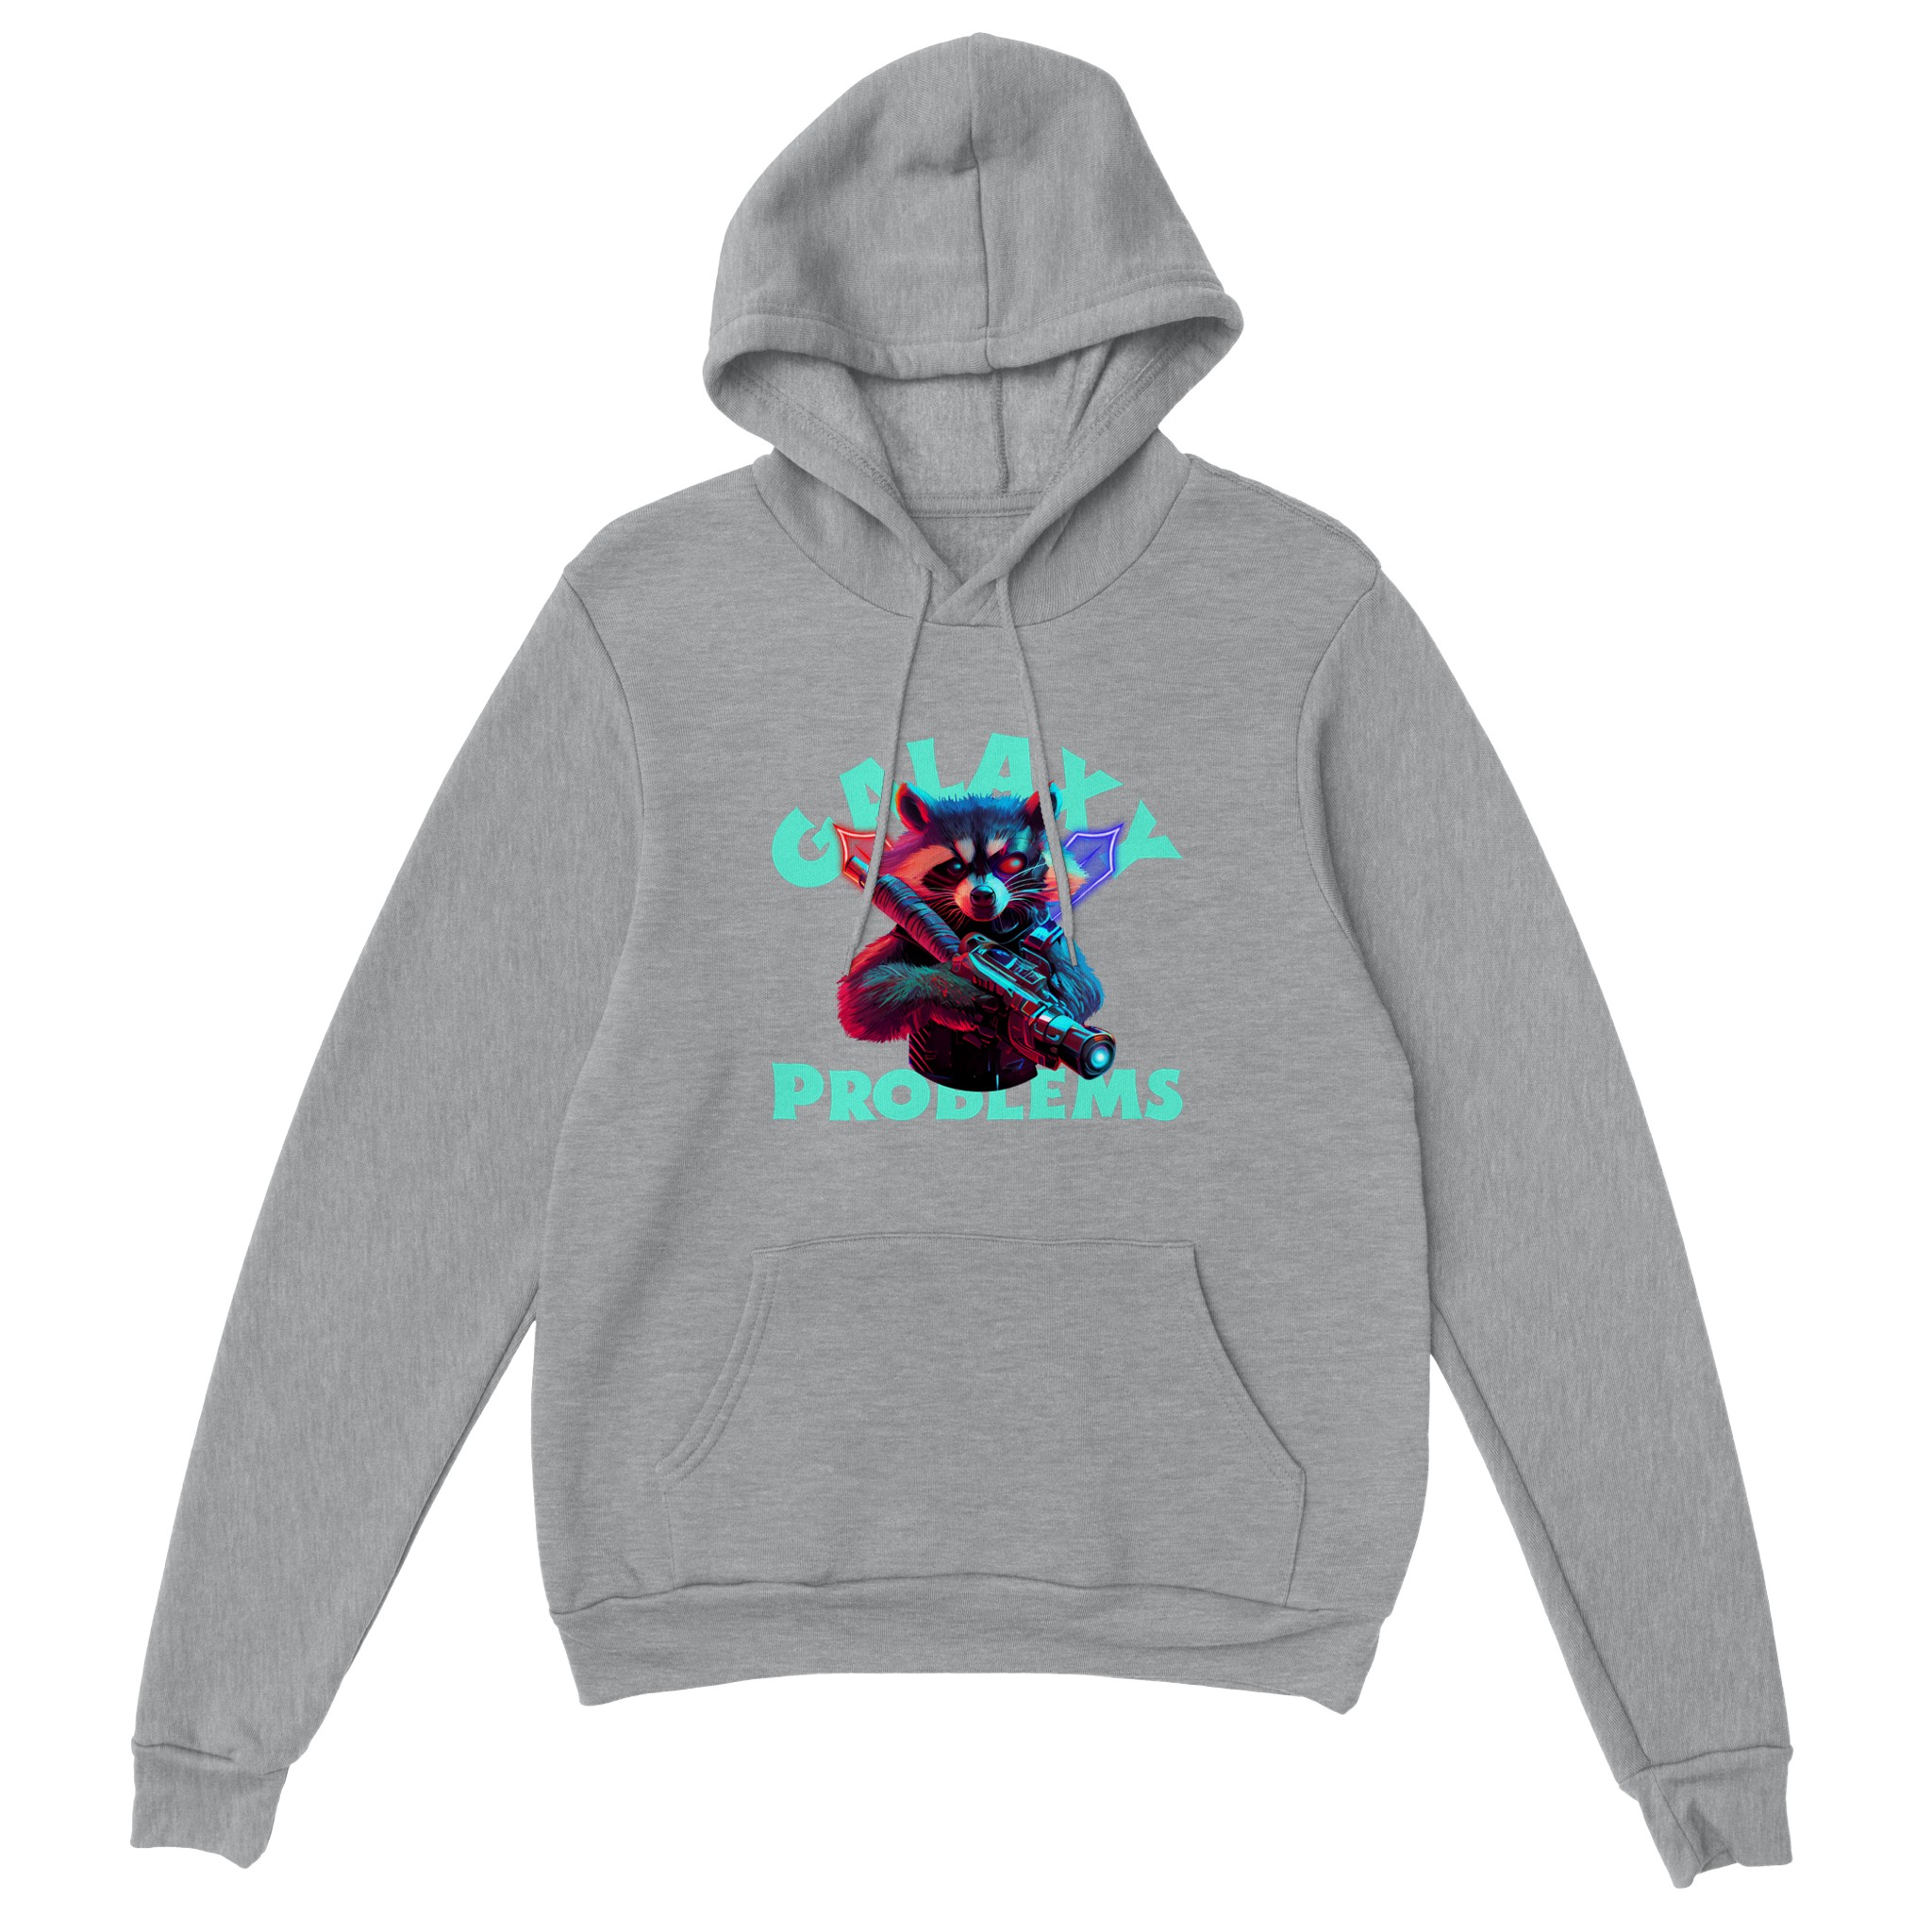 space raccoon design on a hoodie